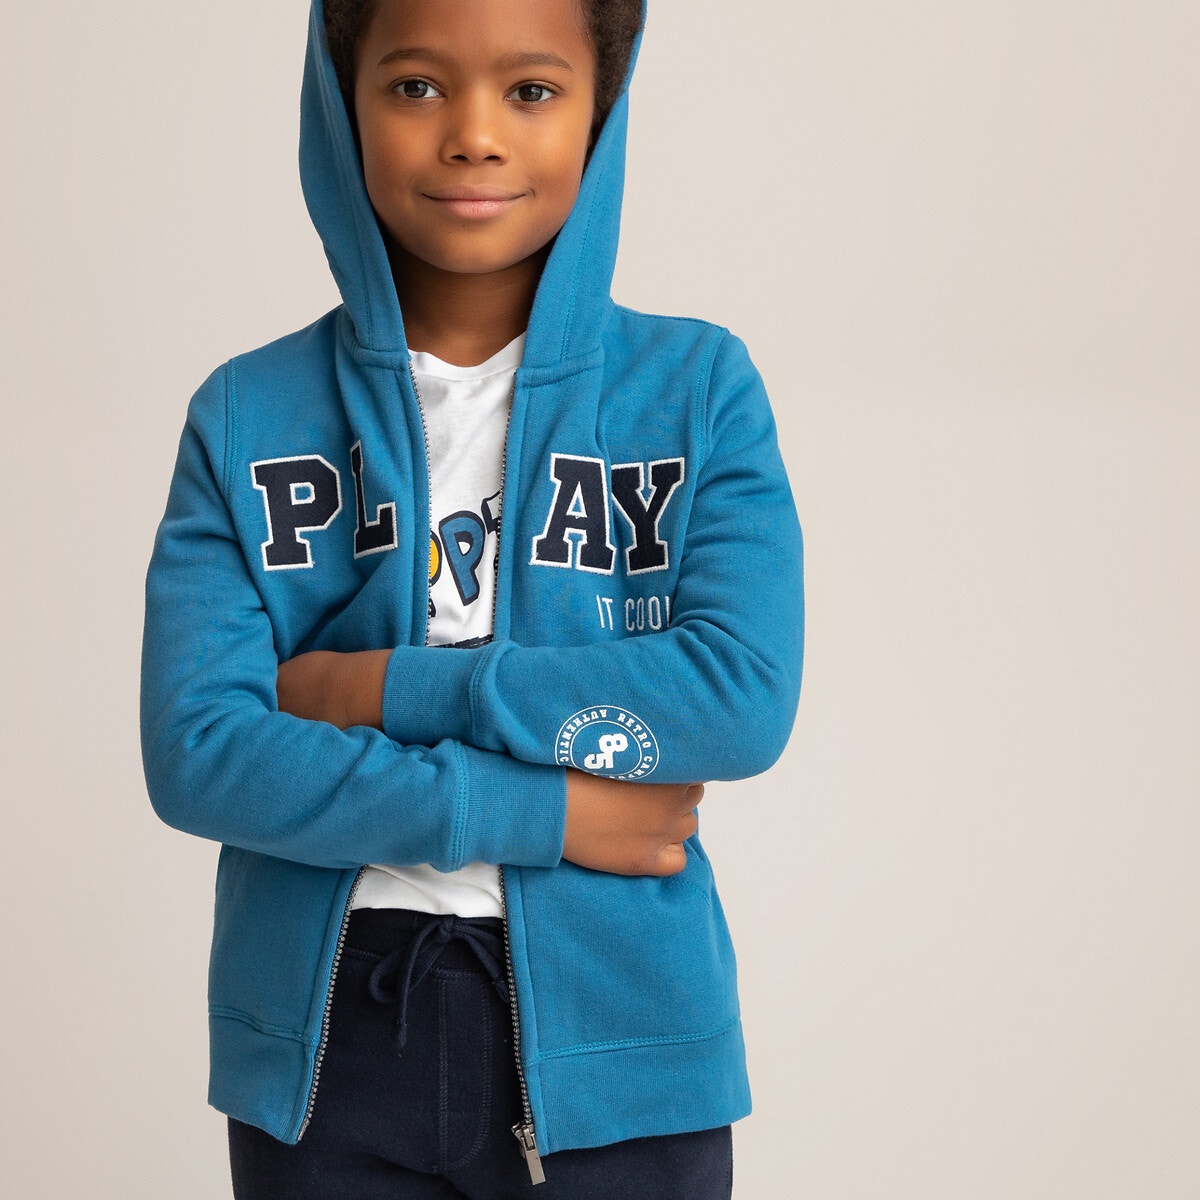 ΠΑΙΔΙ | Μπλούζες & Πουκάμισα | Φούτερ Ζακέτα με φερμουάρ και κουκούλα, 3-14 ετών